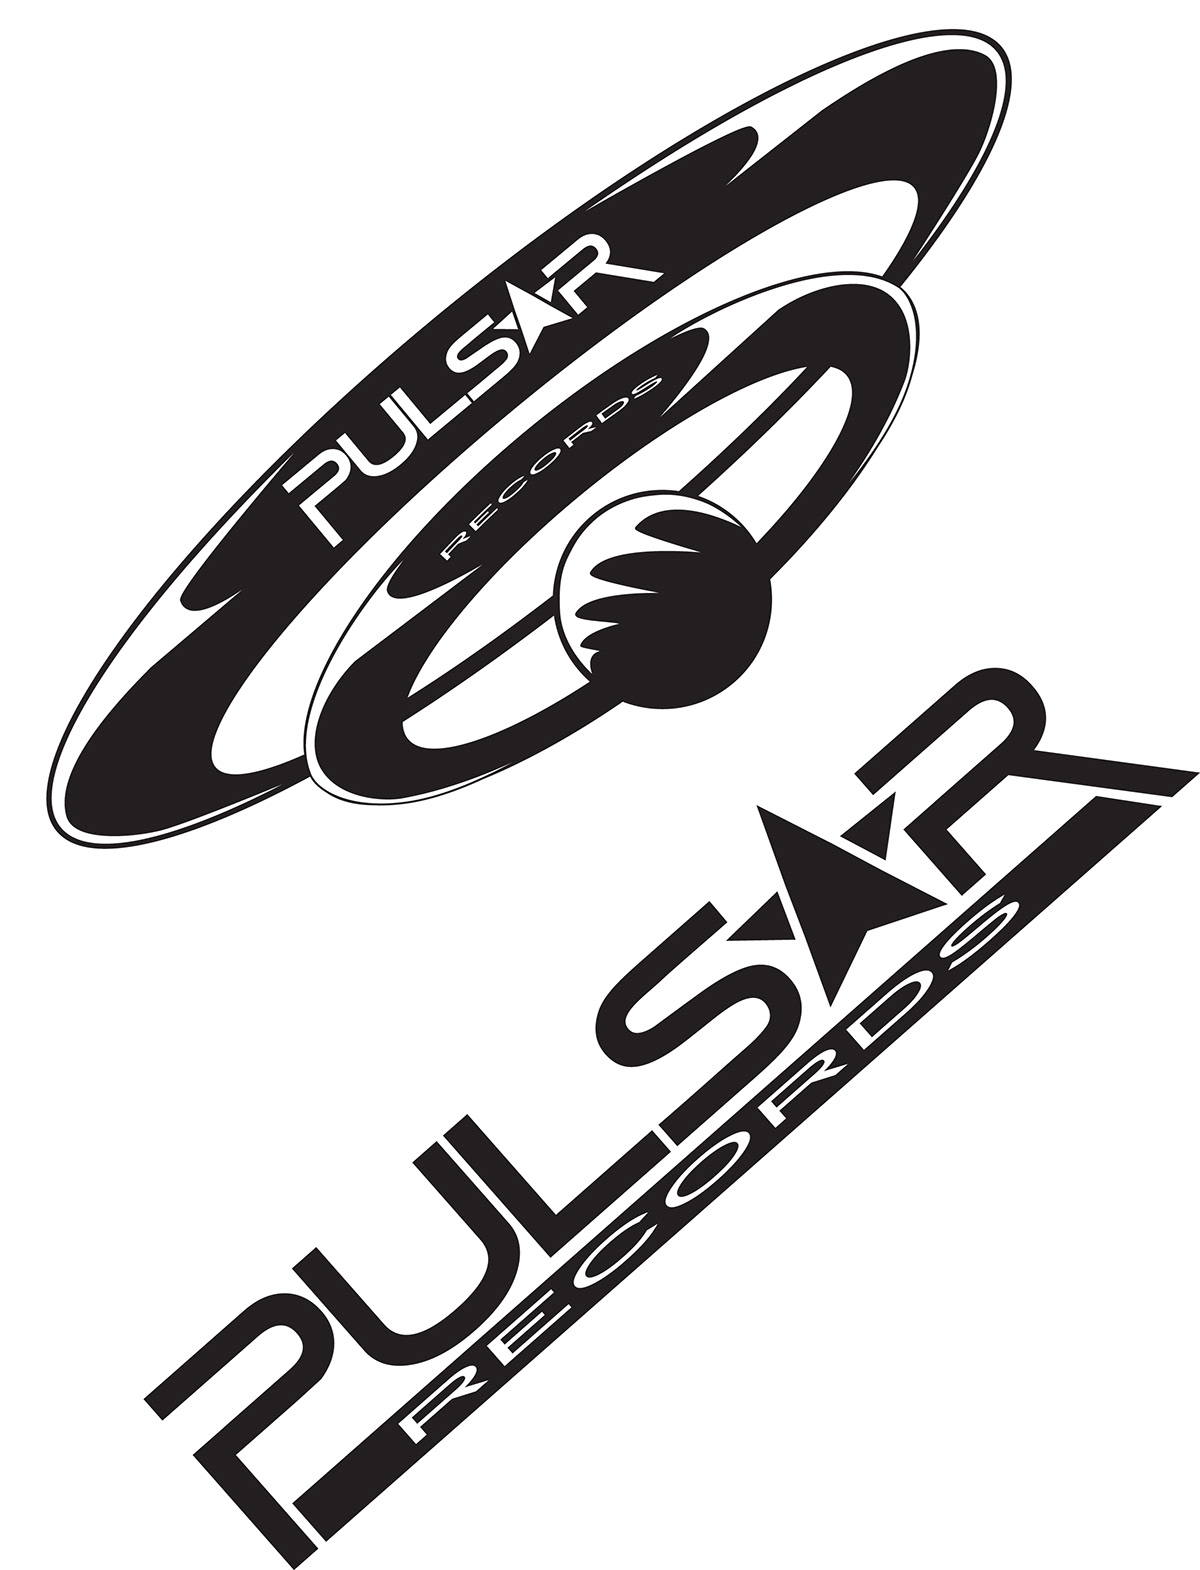 Full Sail Logos and symbols pulsar records